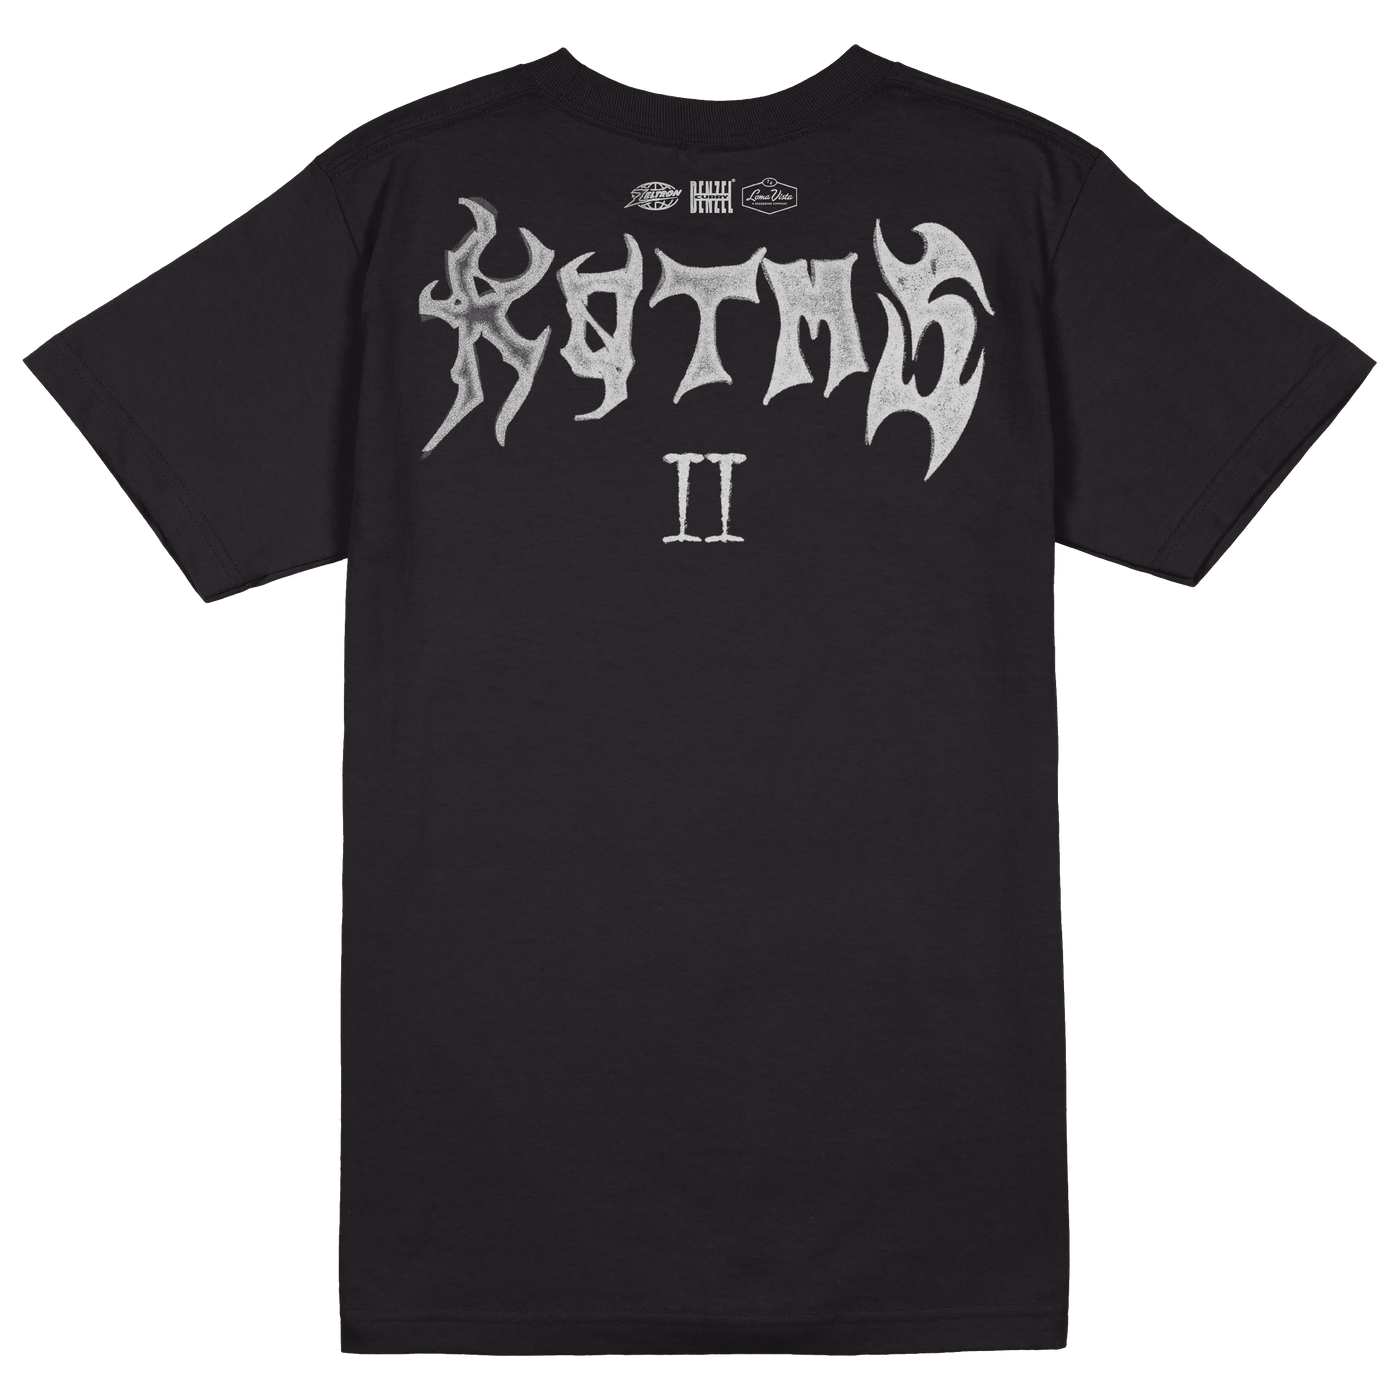 KOTMS VOL II Album T-Shirt